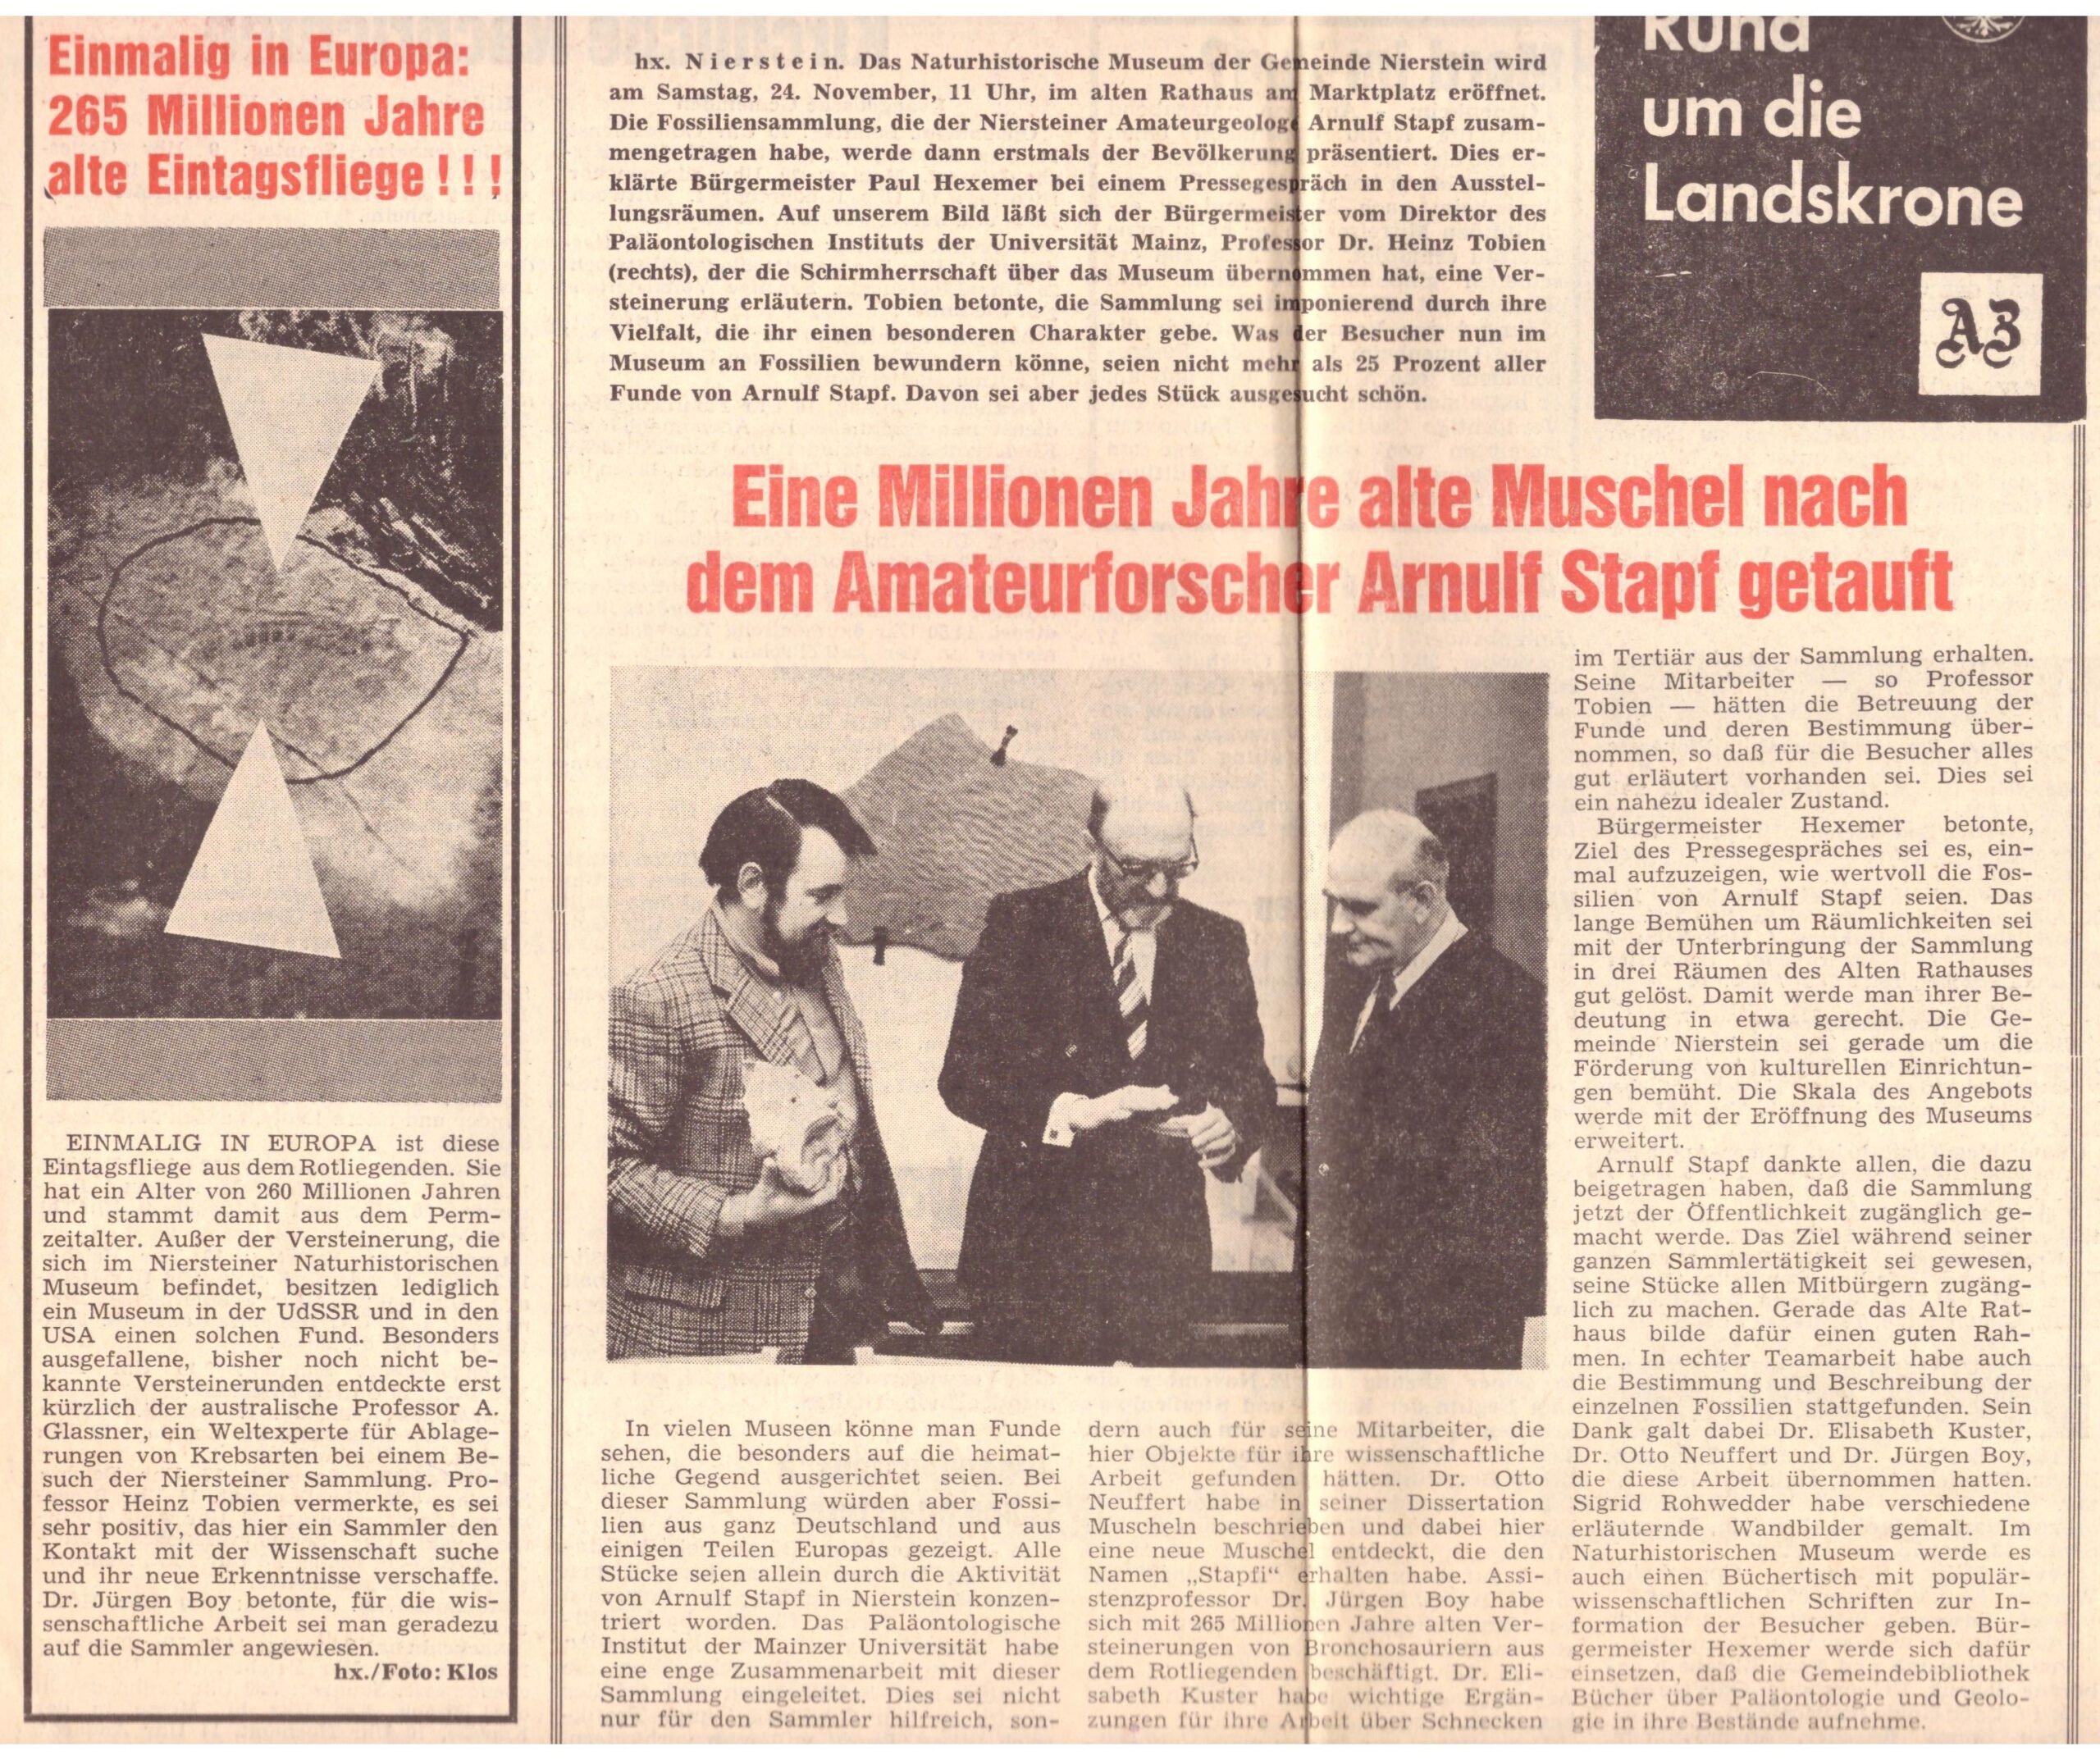 Aus dem Bericht in der ersten Spalte dieser Seite (der Allgemeinen Zeitung vom 17. November 1973) ist zu entnehmen, dass der Schirmherr des Museums, Professor Heinz Tobien (damaliger Direktor des Paläontologischen Instituts der Universität Mainz), Arnulf Stapf für seine Kontaktsuche mit der Wissenschaft lobte. 